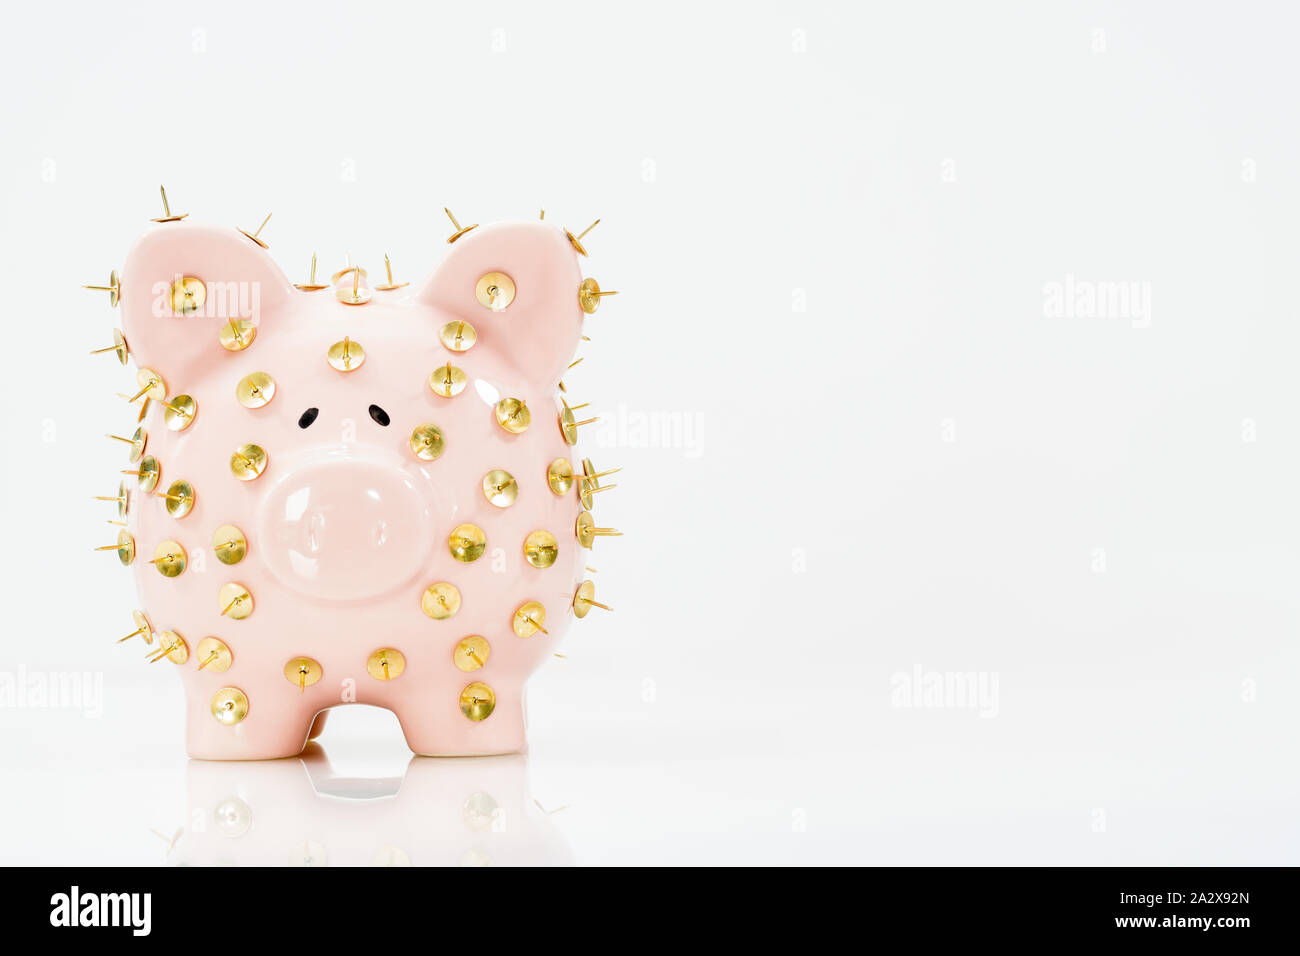 Image conceptuelle illustrant la protection des économies et des investissements montrant une banque de porc rose protégée par des piles de dessin et isolée contre le blanc. Banque D'Images